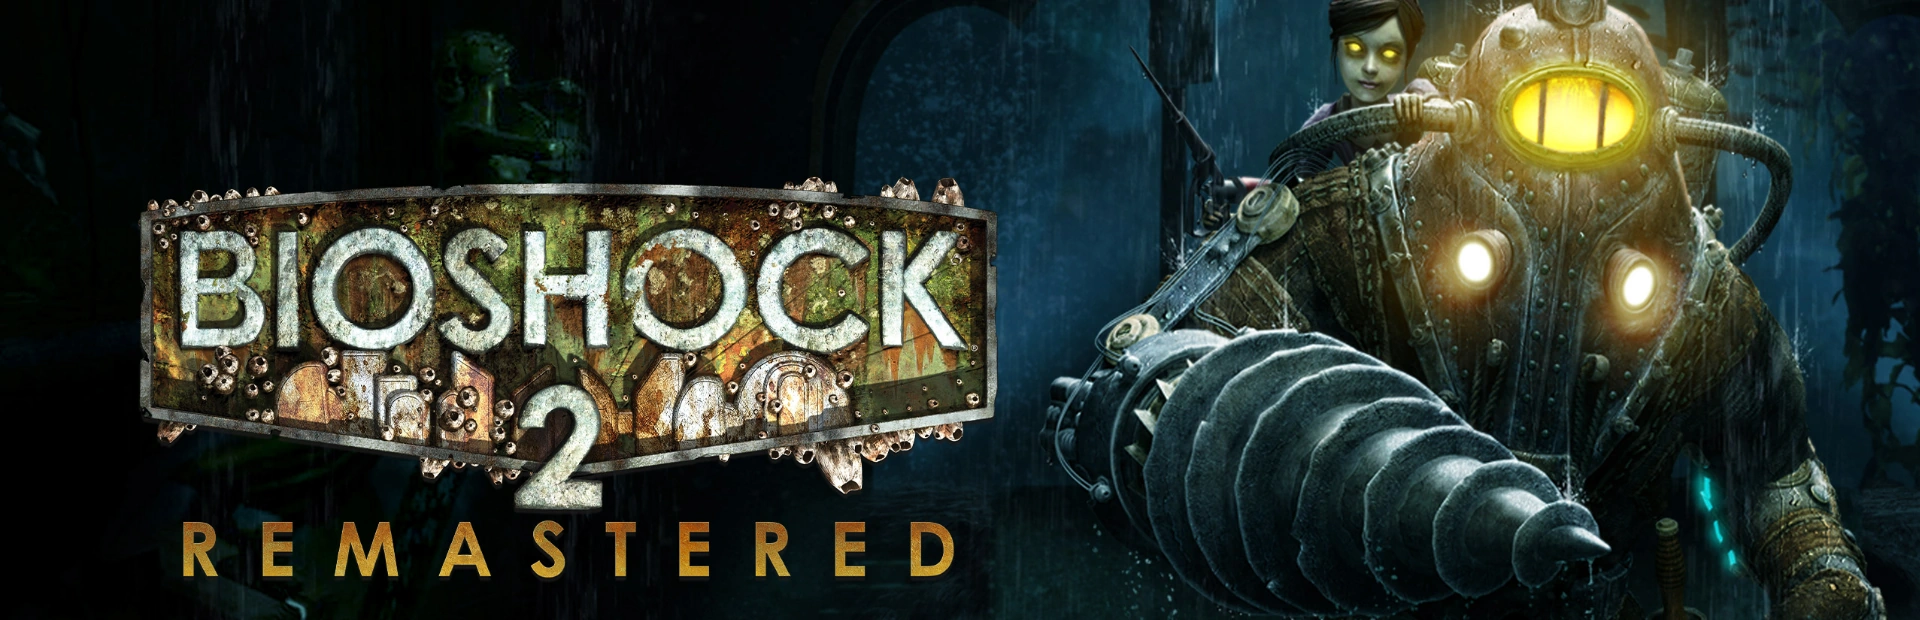 BioShock 2 Remastered.banner1